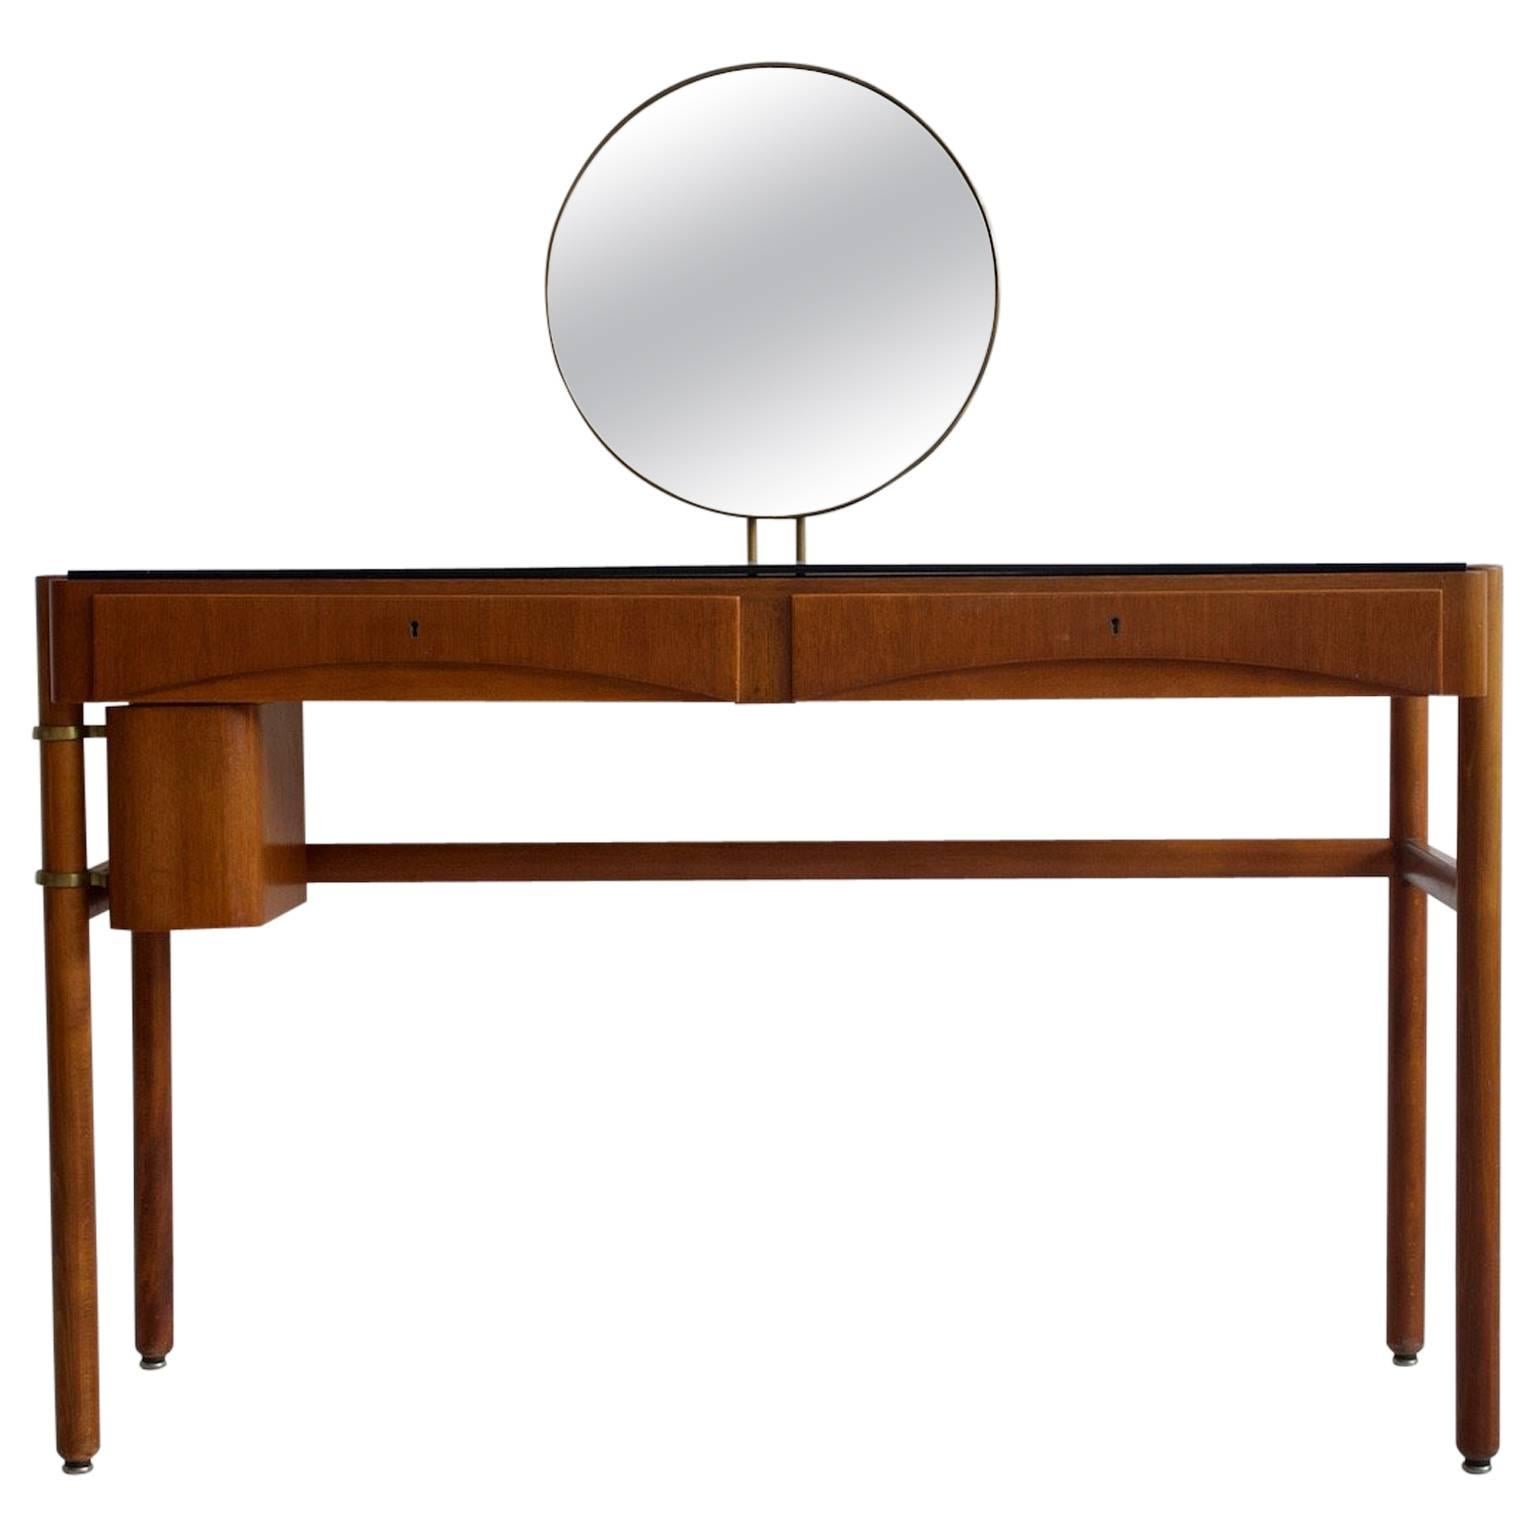 Bertil Fridhagen Mirrored Dressing Table by Bodafors, 1957